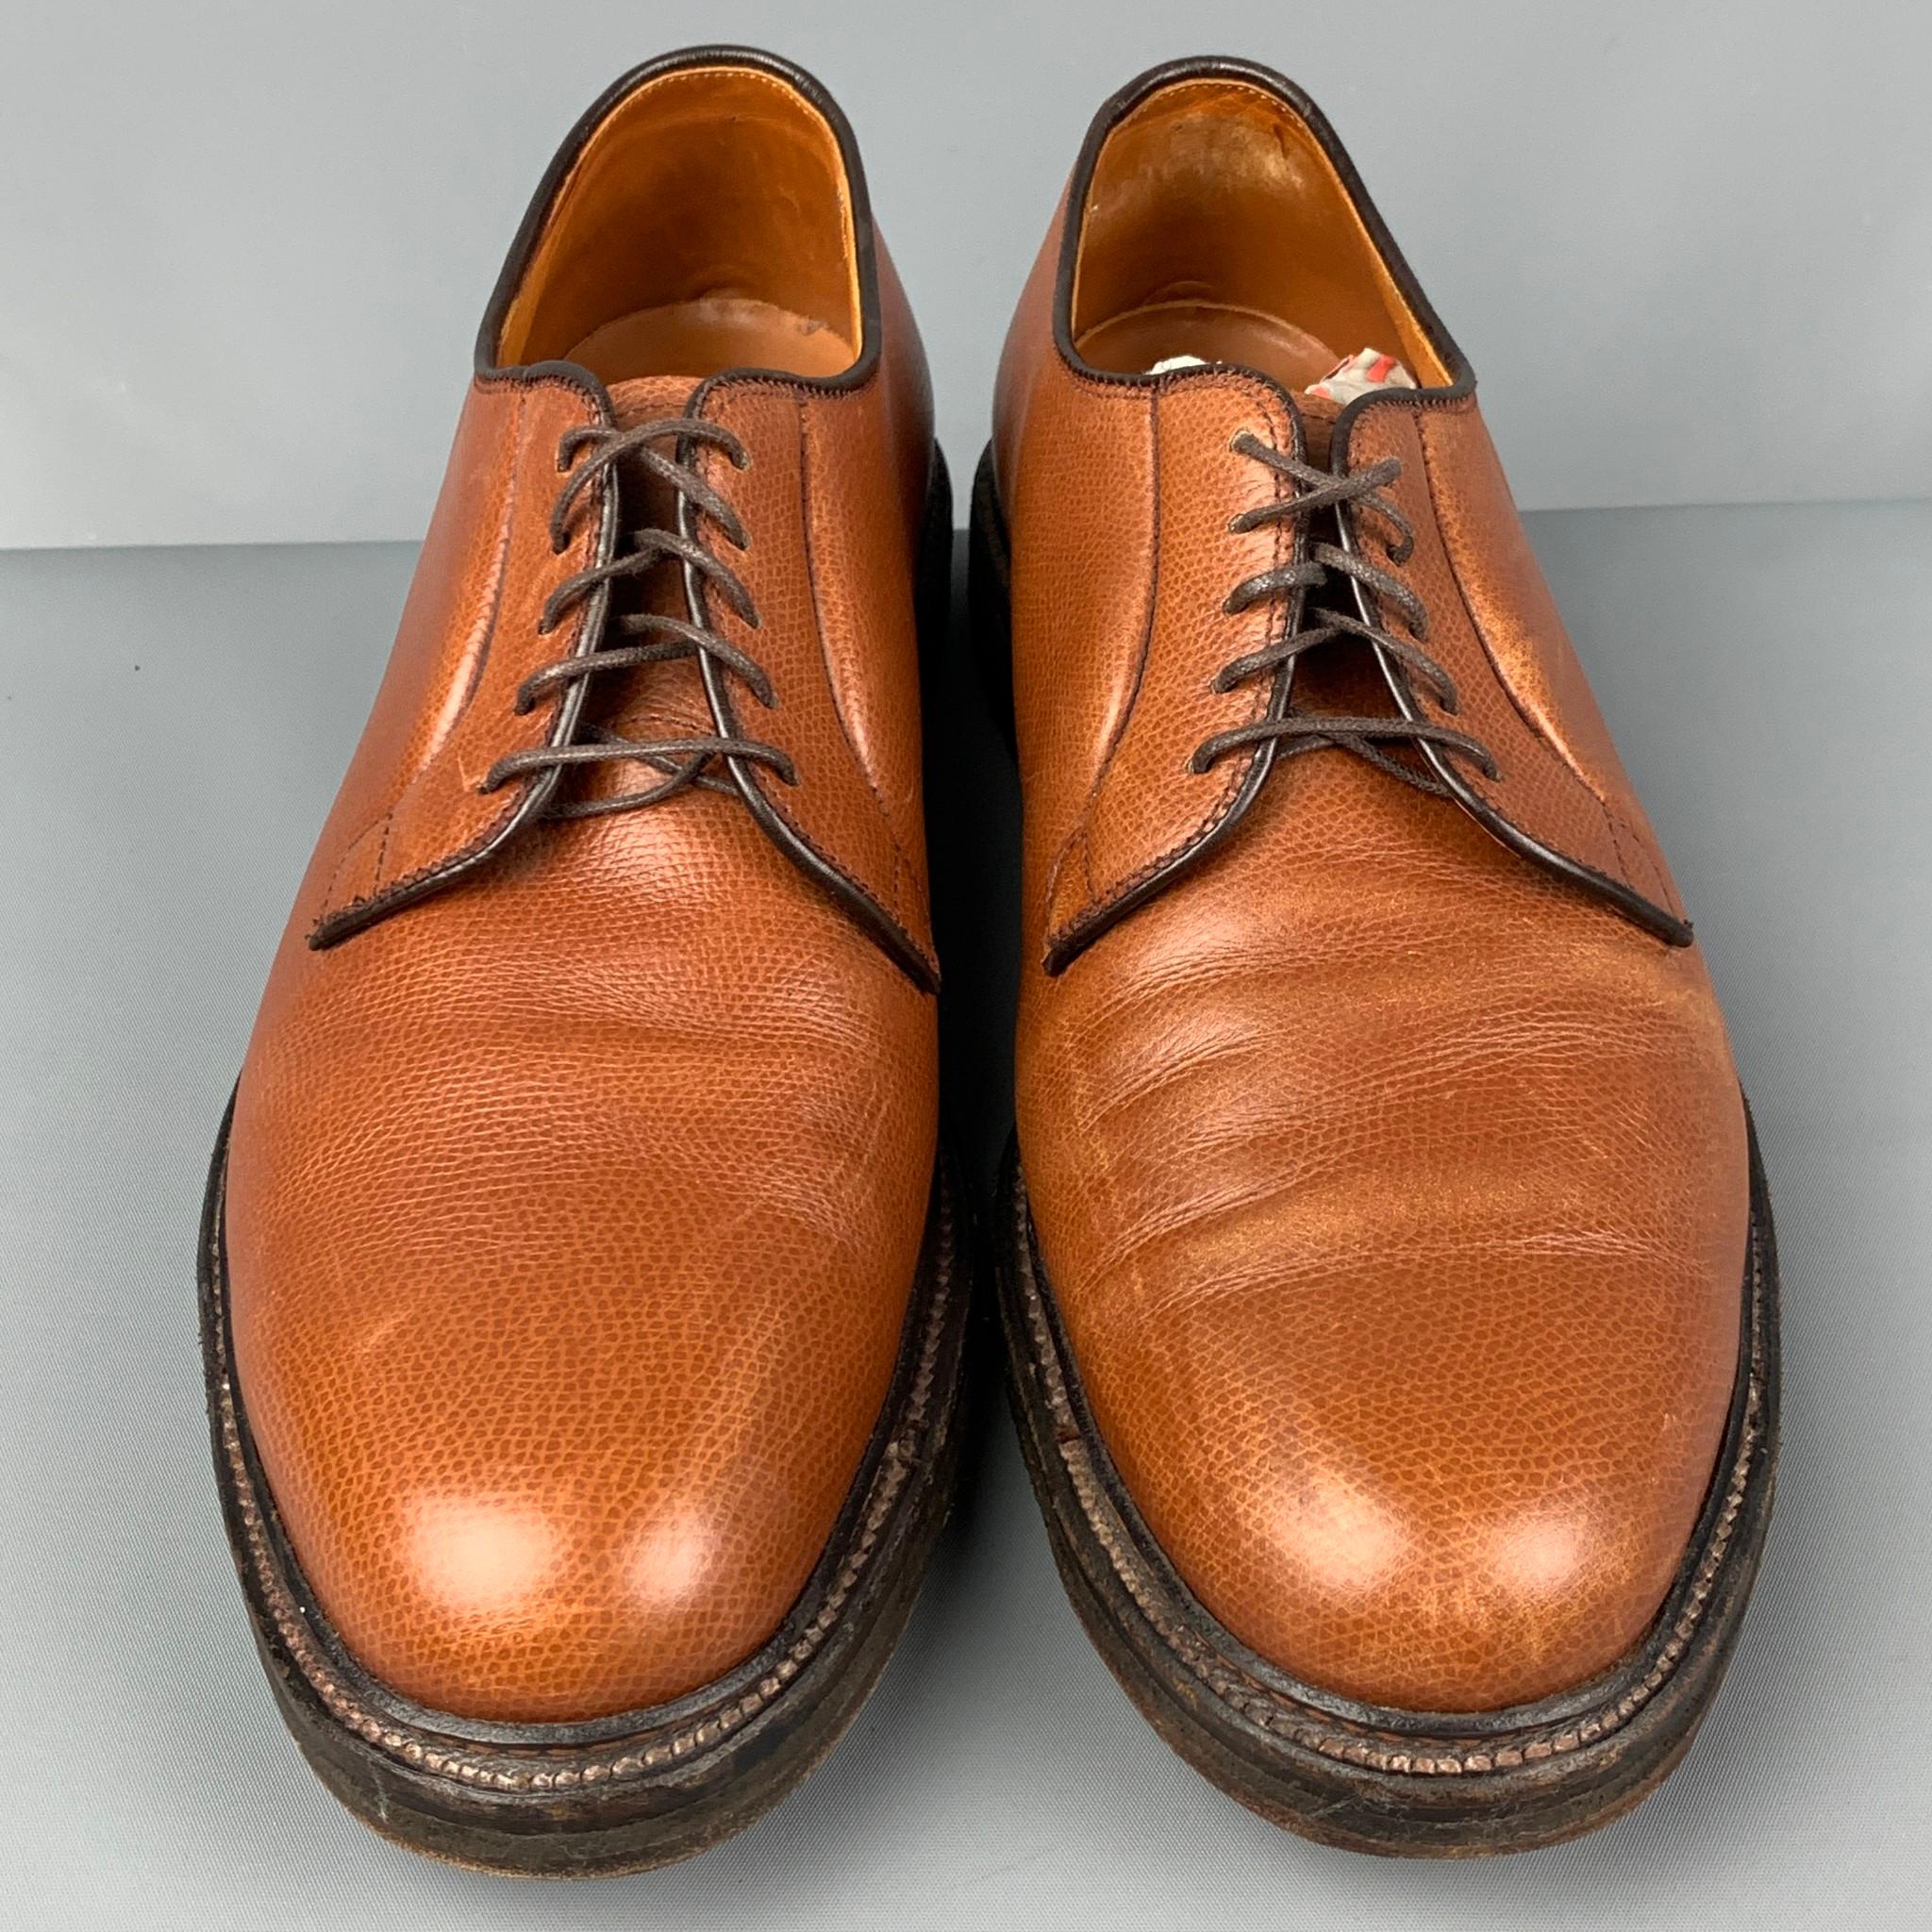 Gray ALDEN Size 10.5 Tan Pebble Grain Leather Lace Up Shoes